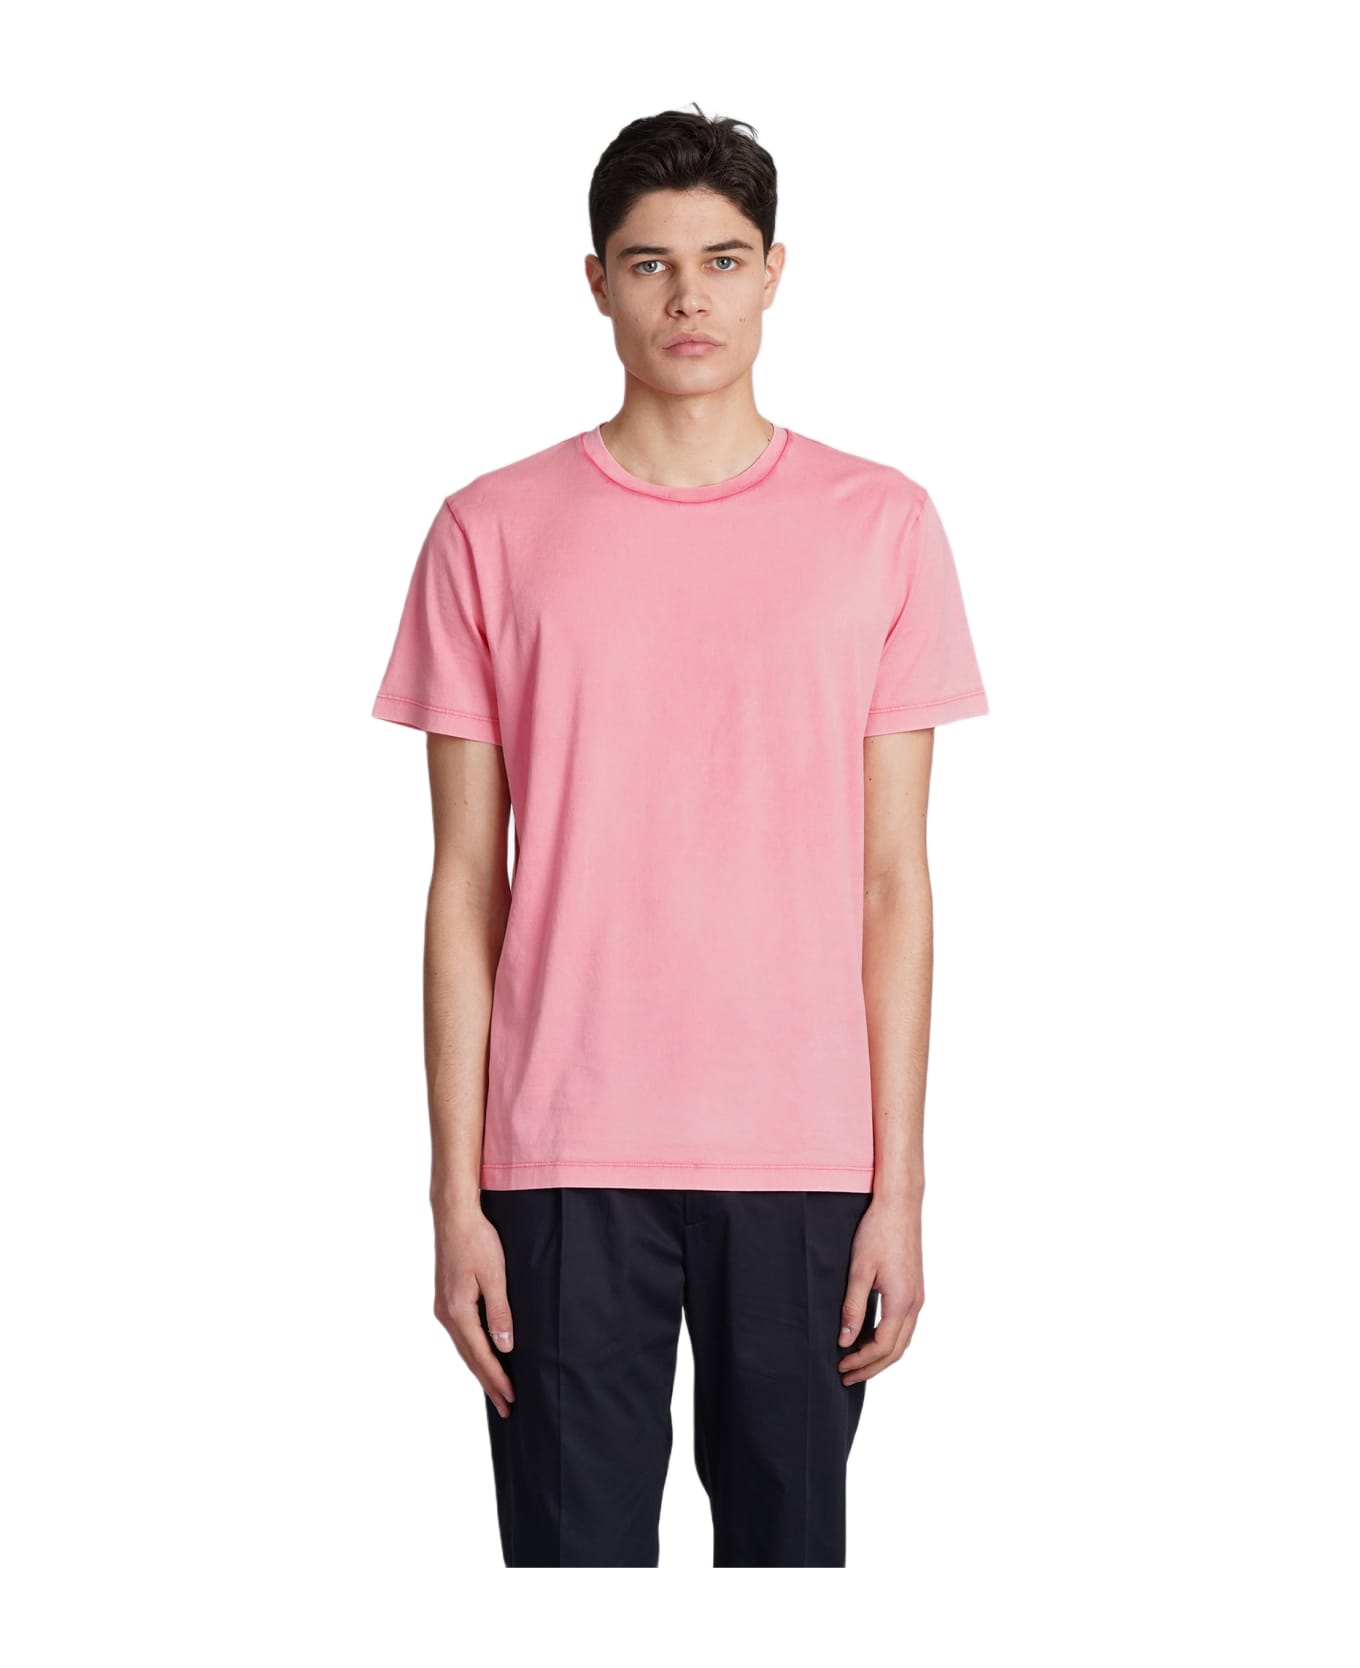 Roberto Collina T-shirt In Rose-pink Cotton - rose-pink